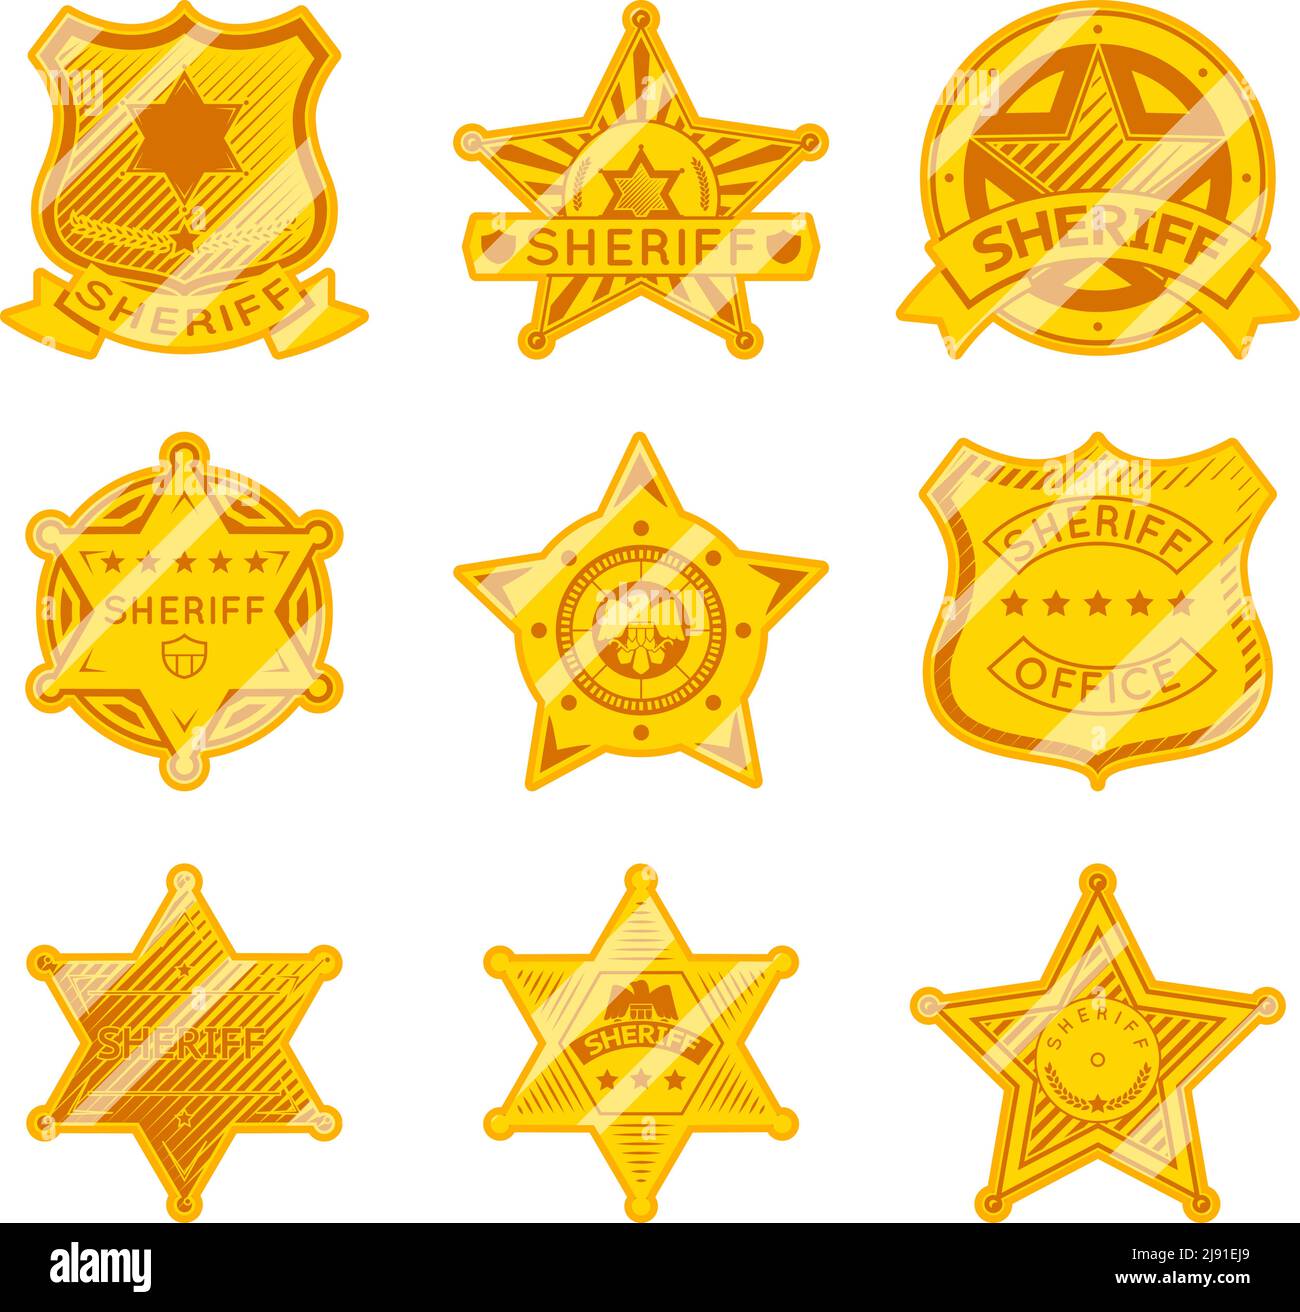 Badge Golden sheriff star. Polizia e diritto, autorità e giustizia, stella marshall. Illustrazione vettoriale Illustrazione Vettoriale